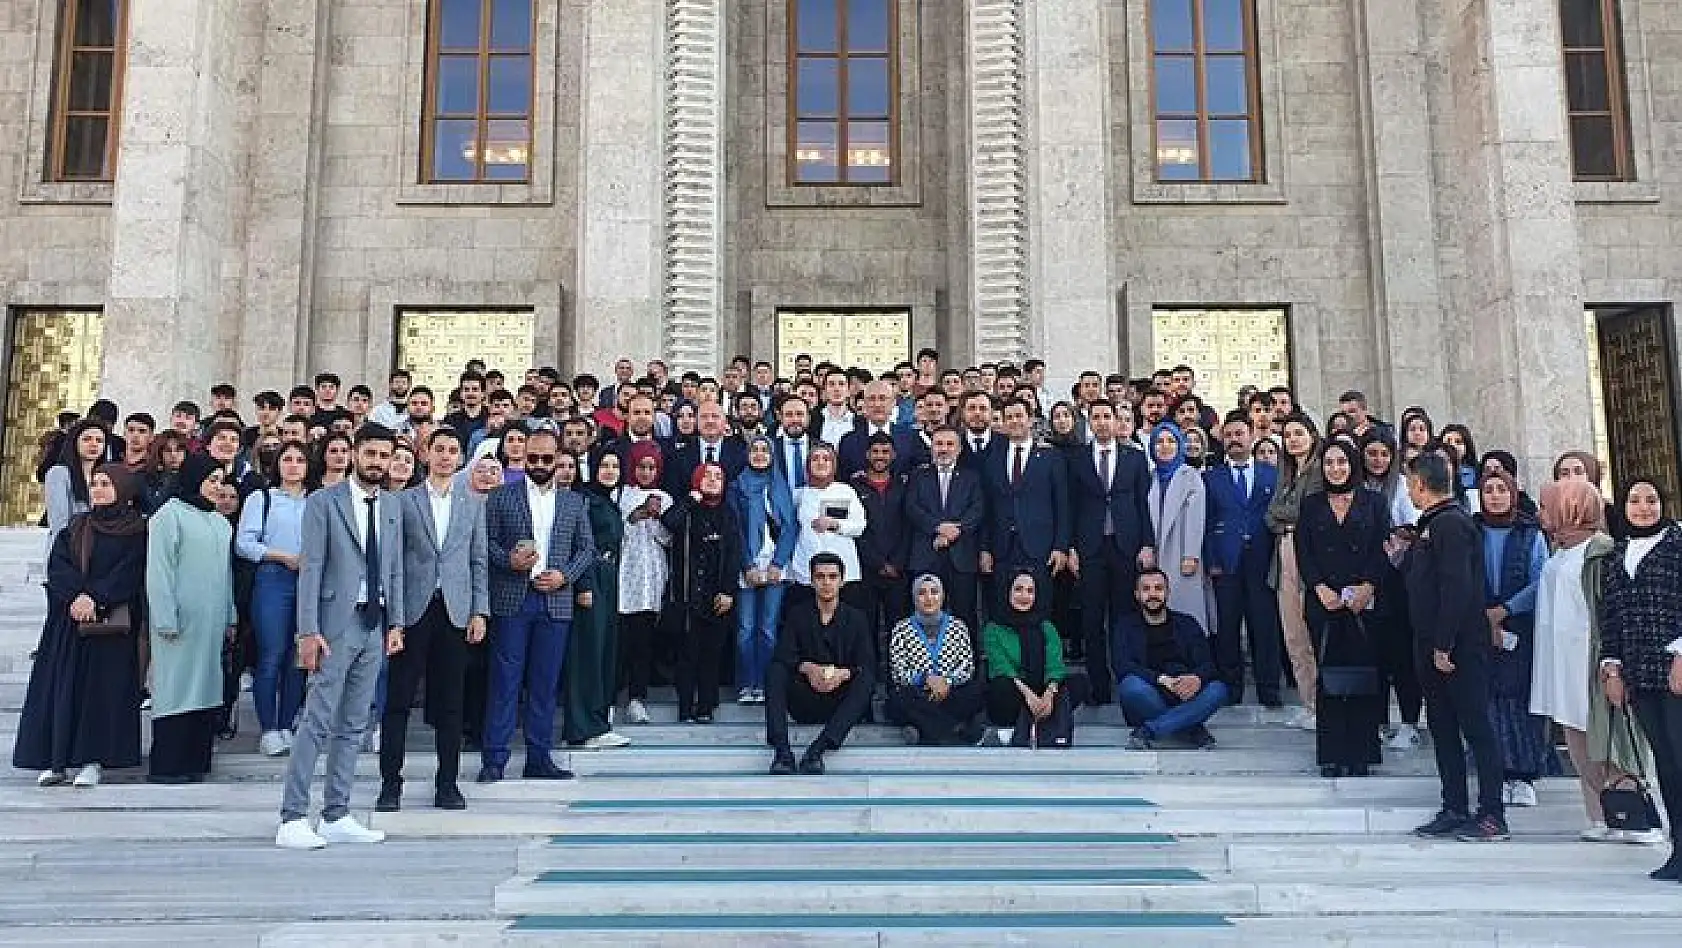 Milletvekili Ağar, Elazığ'dan Ankara'ya Giden Gençleri İftar Programında Ağırladı